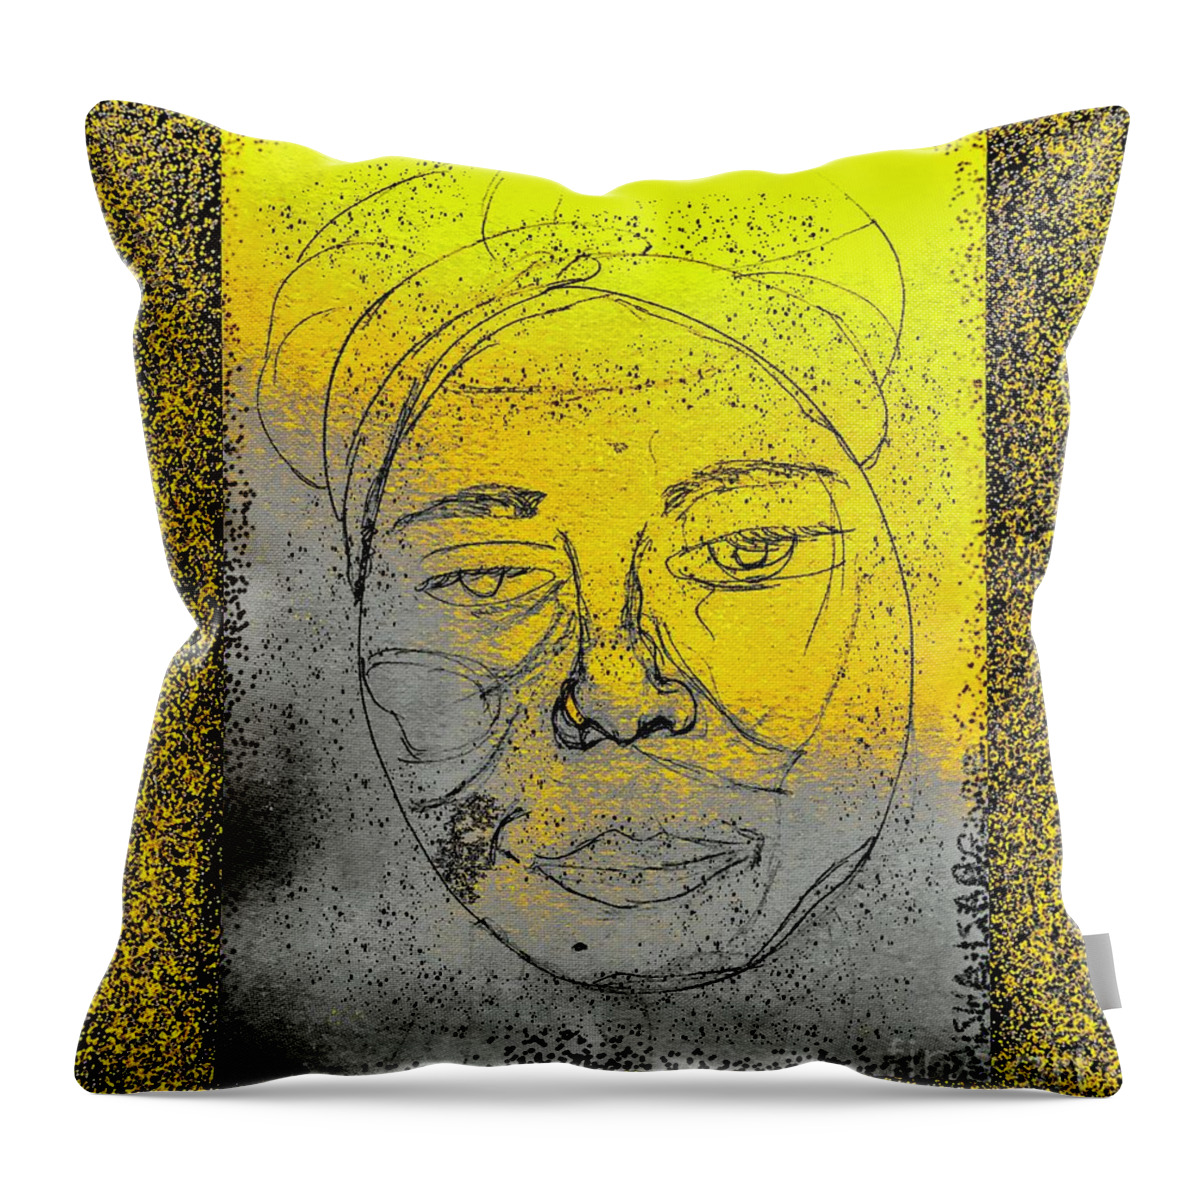 Golden Light Throw Pillow featuring the digital art Golden Light by Aisha Isabelle